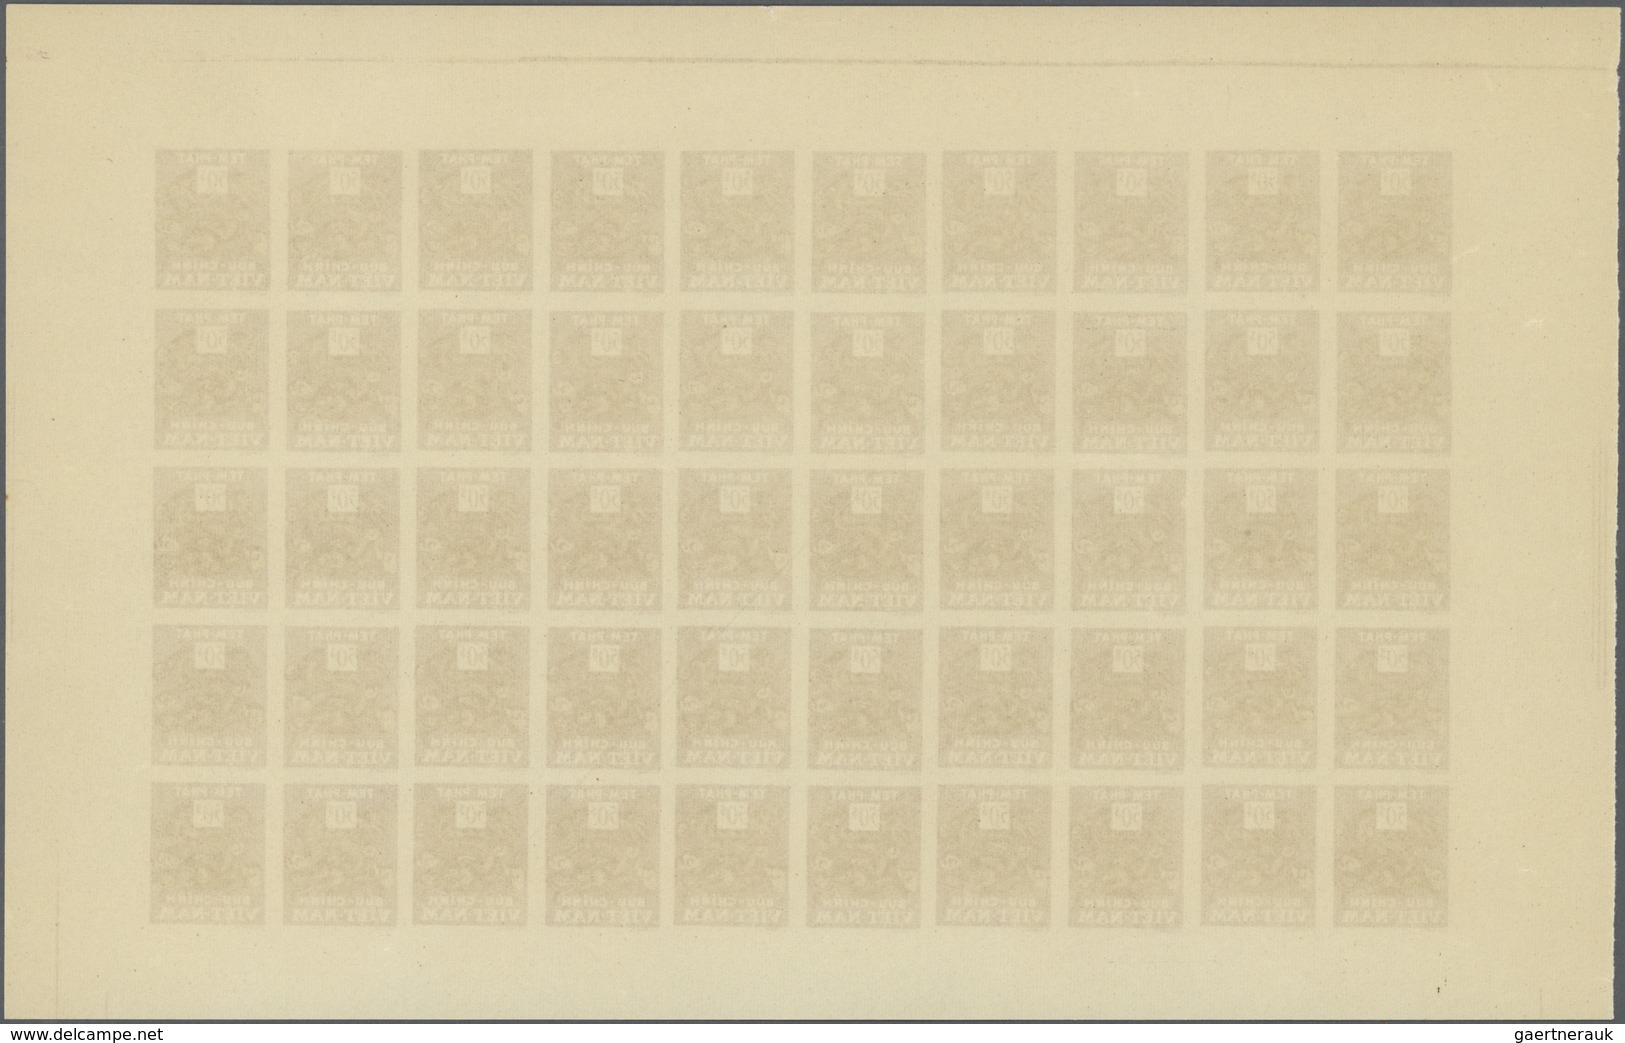 Vietnam-Süd - Portomarken: 1955/1956. 6 panneaux complets de 50 avec marges non dentelés. (non réper